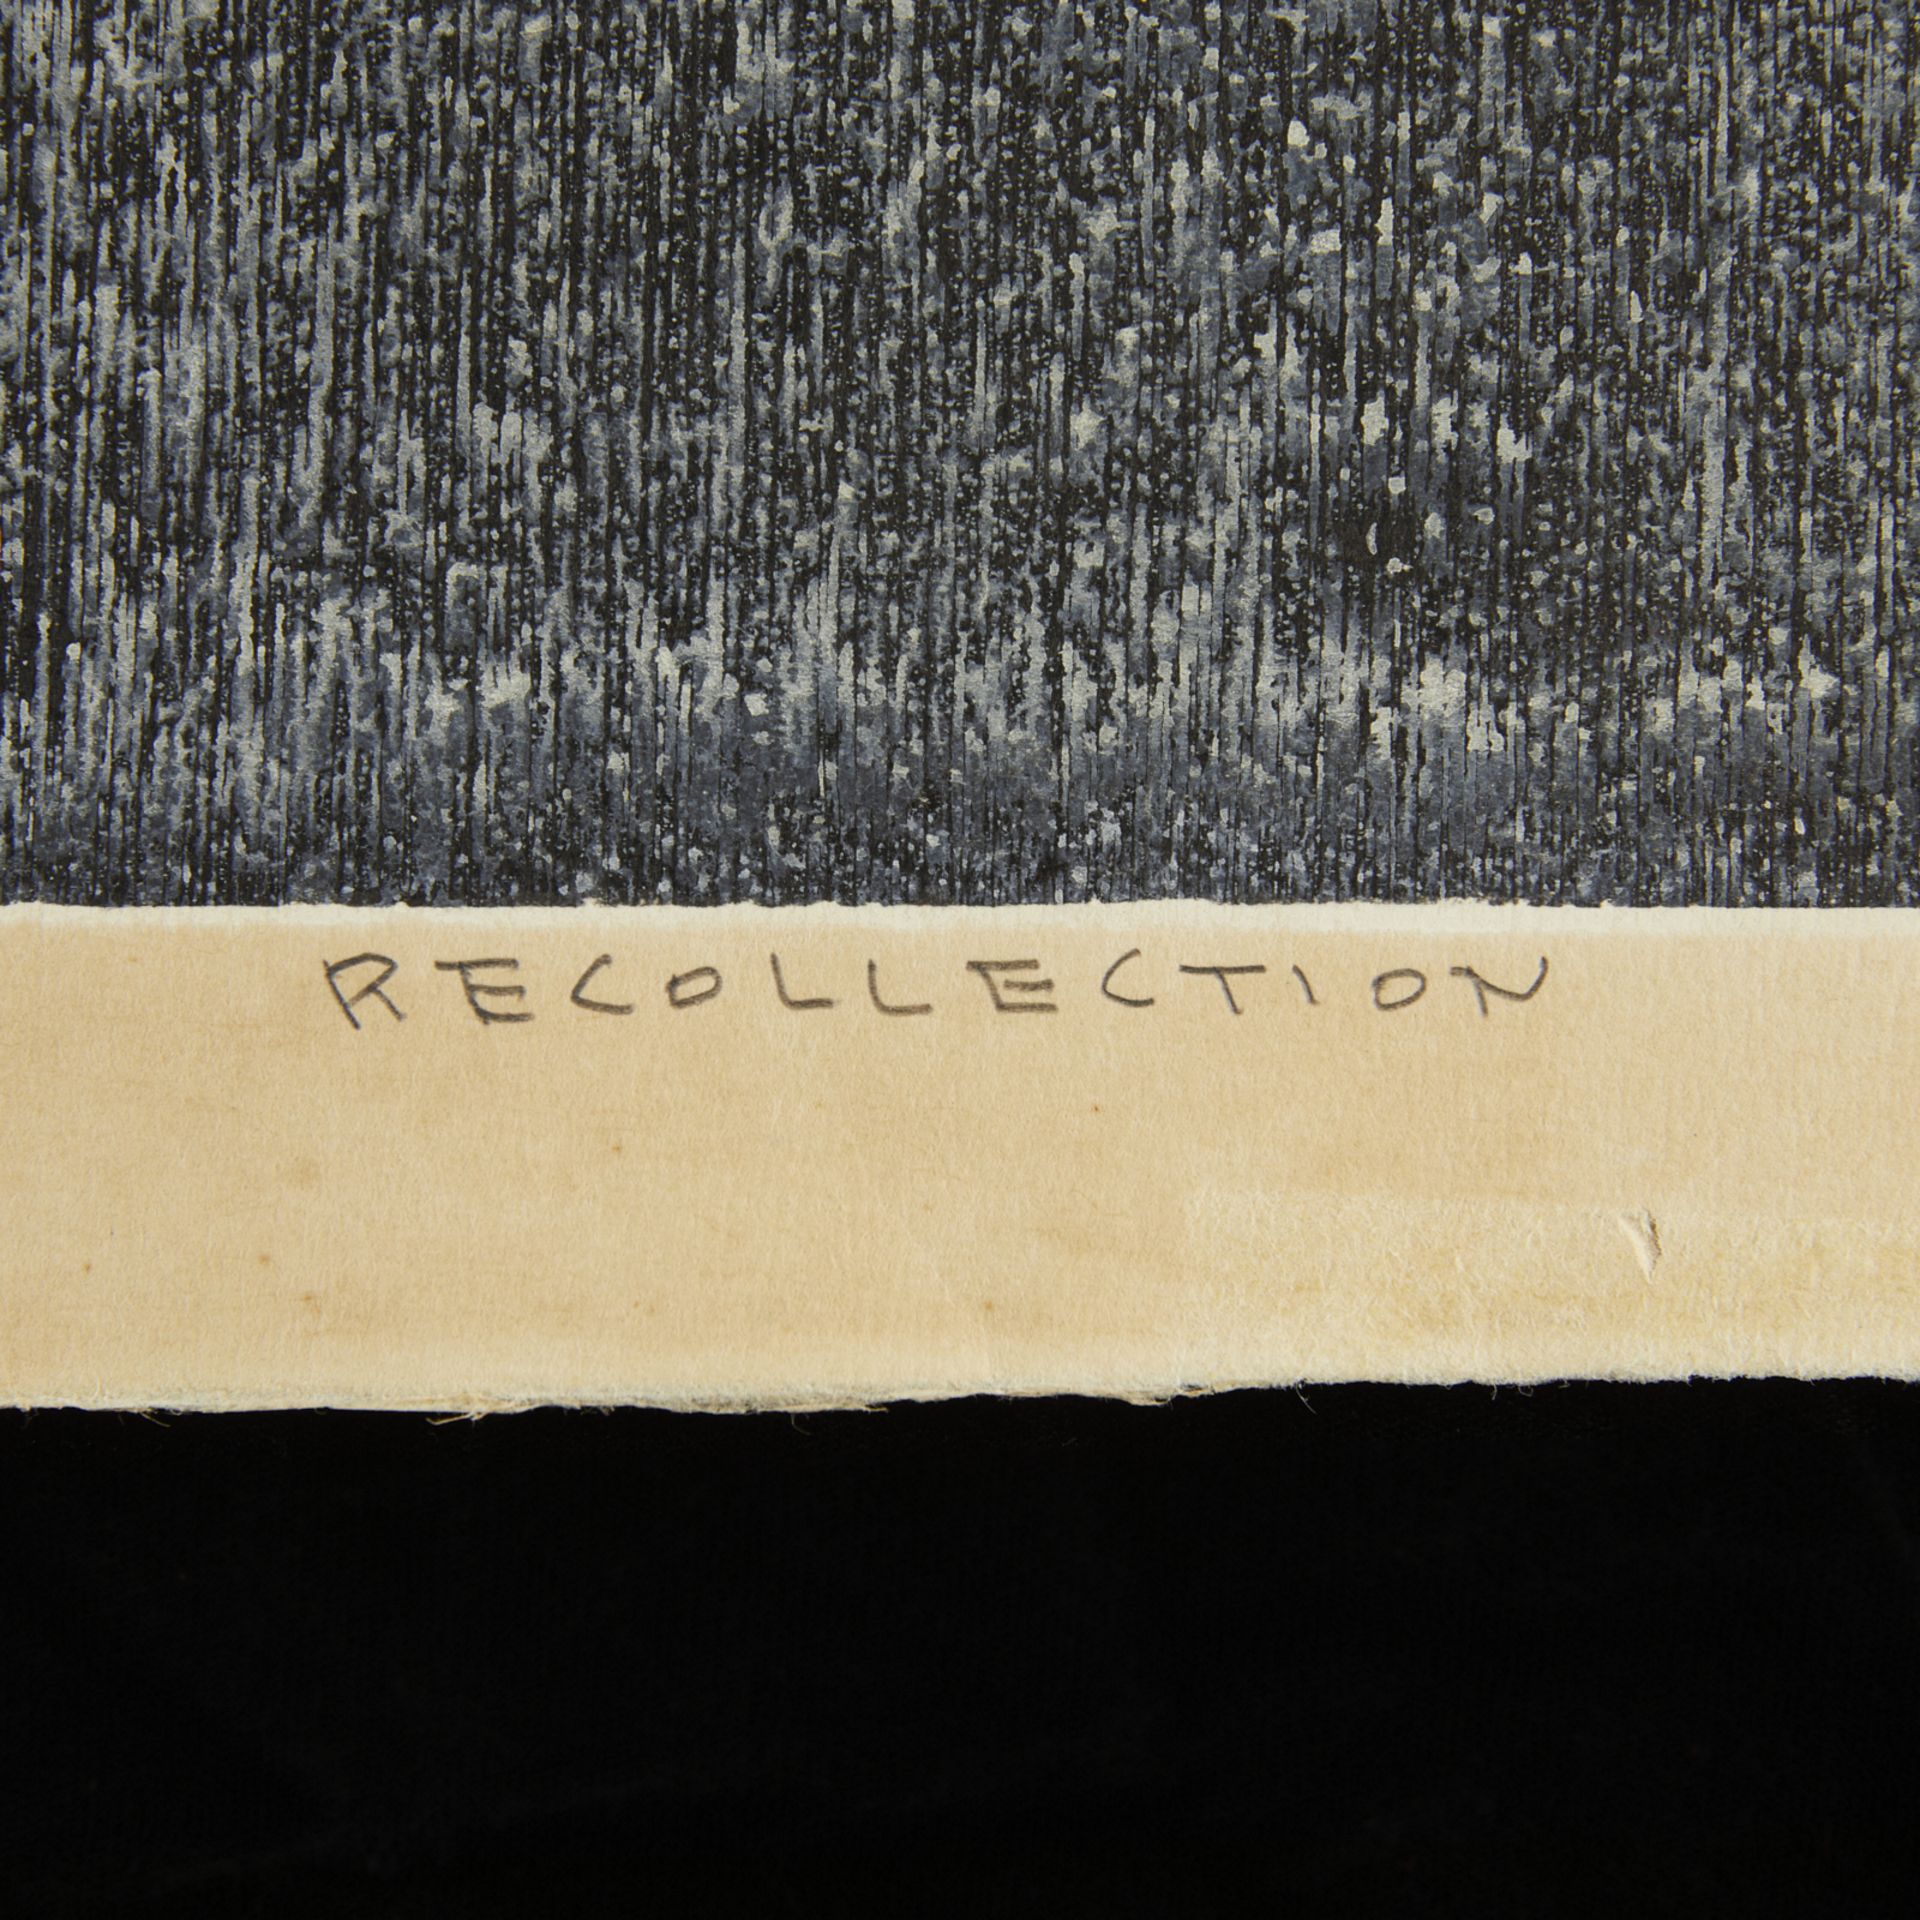 Kiyoshi Saito "Recollection" Woodblock Print 1960 - Image 5 of 6